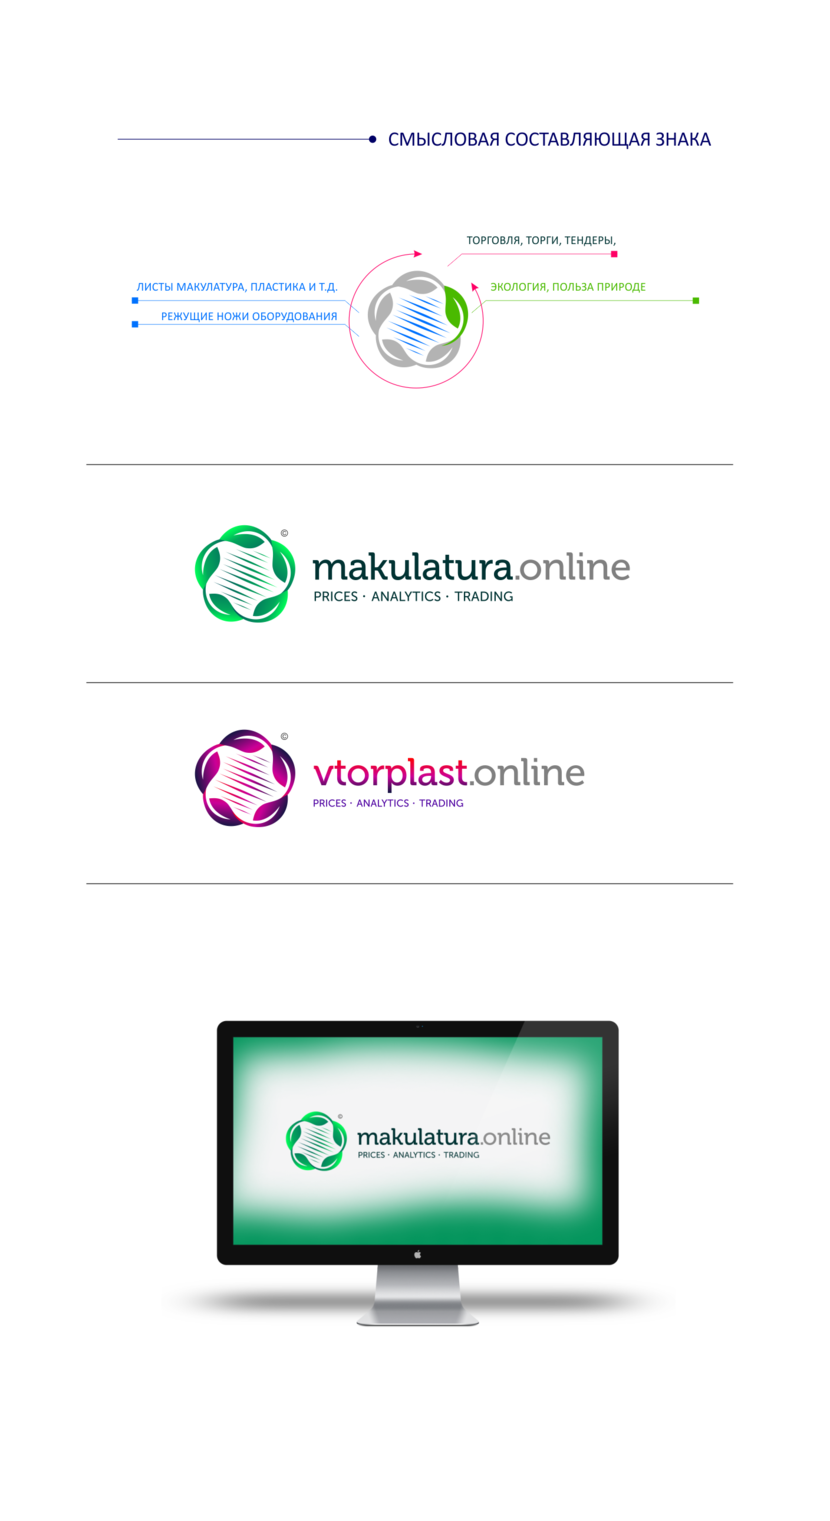 Если понравится, доработаю остальные элементы. - Makulatura.online & Vtorplast.online Создание единого фирменного стиля